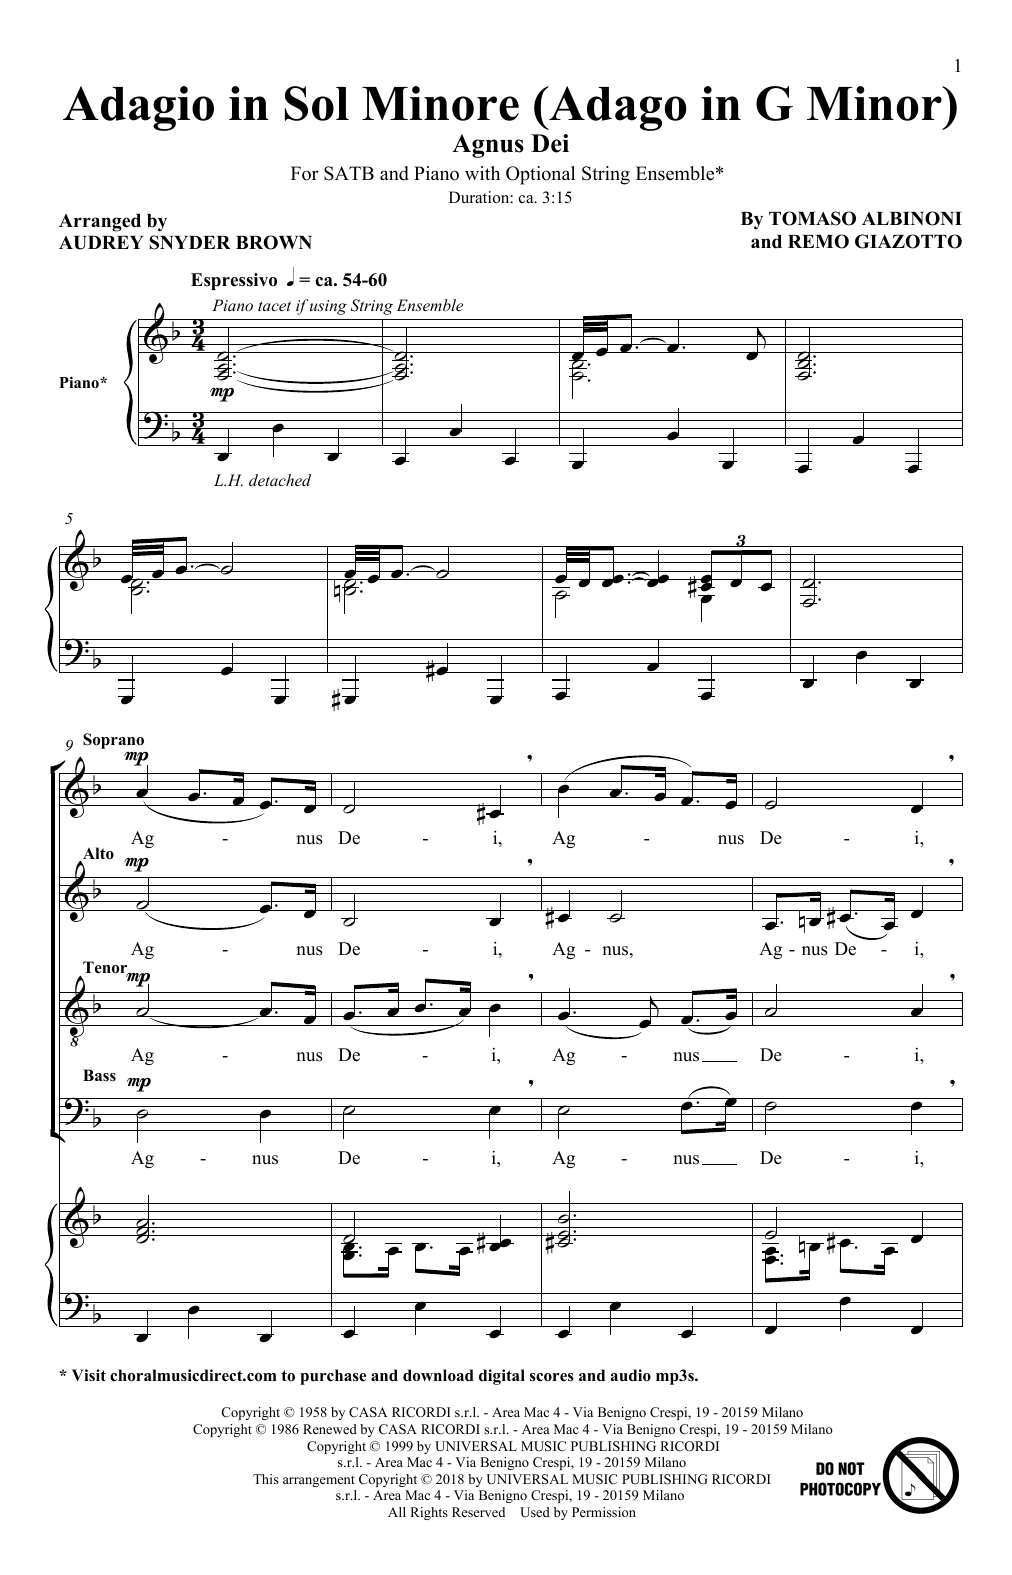 Download Tomaso Albinoni & Remo Giazotto Adagio In Sol Minore (Adagio In G Minor Sheet Music